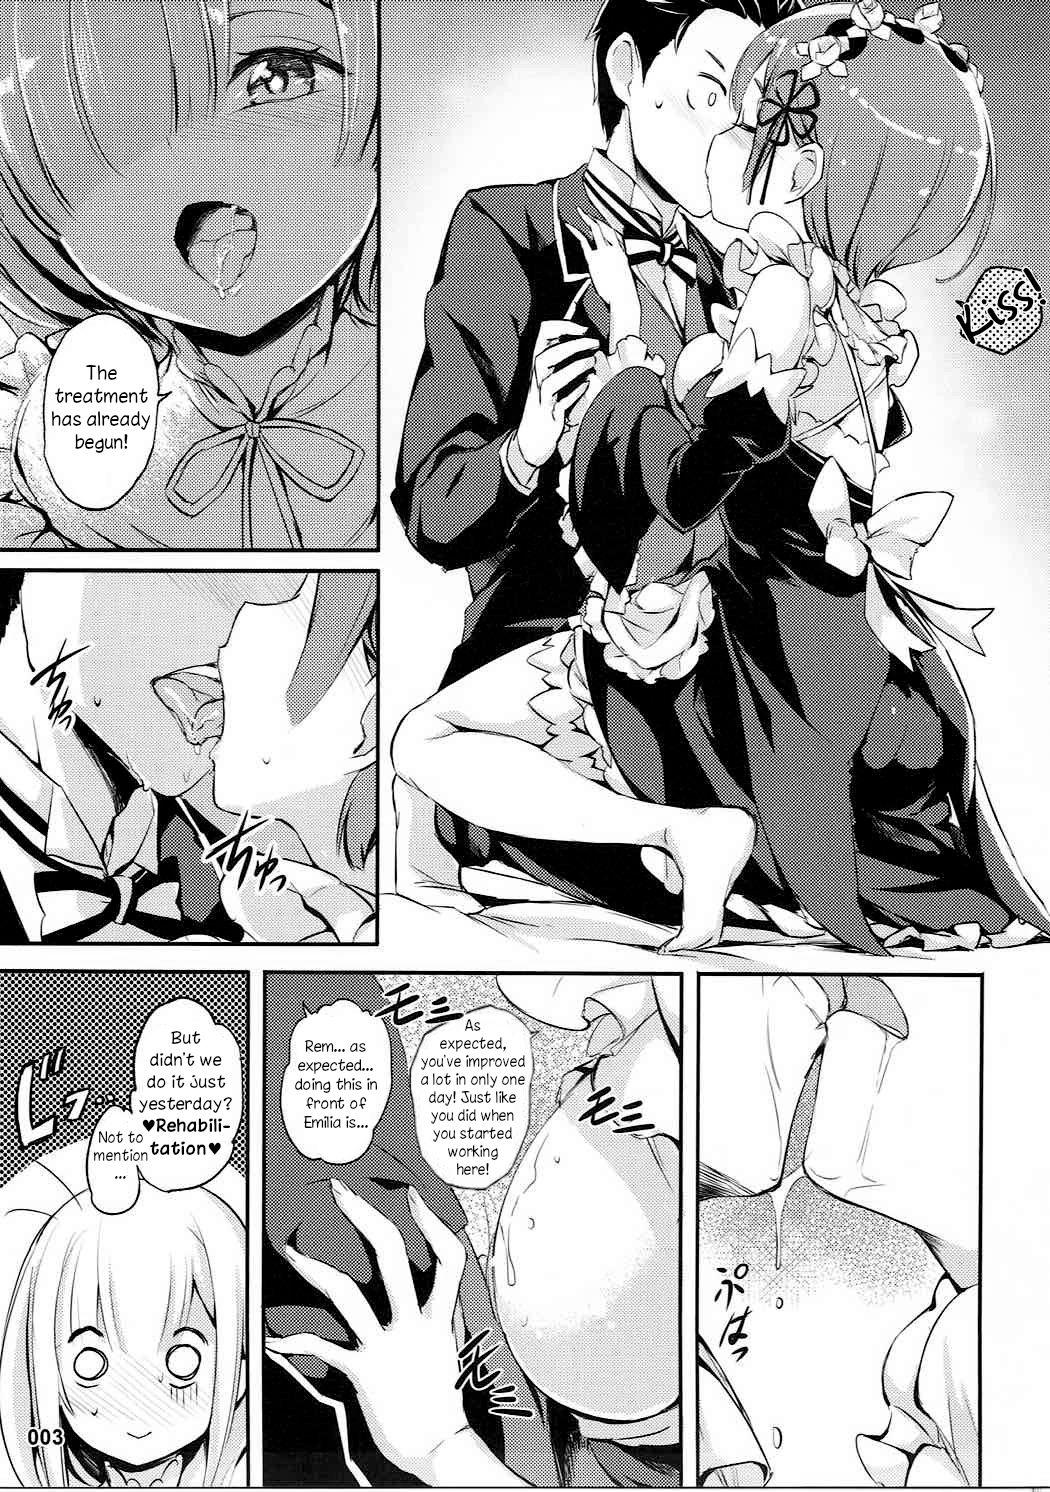 Erotic RE:Zero After Story - Re zero kara hajimeru isekai seikatsu Fantasy Massage - Page 4